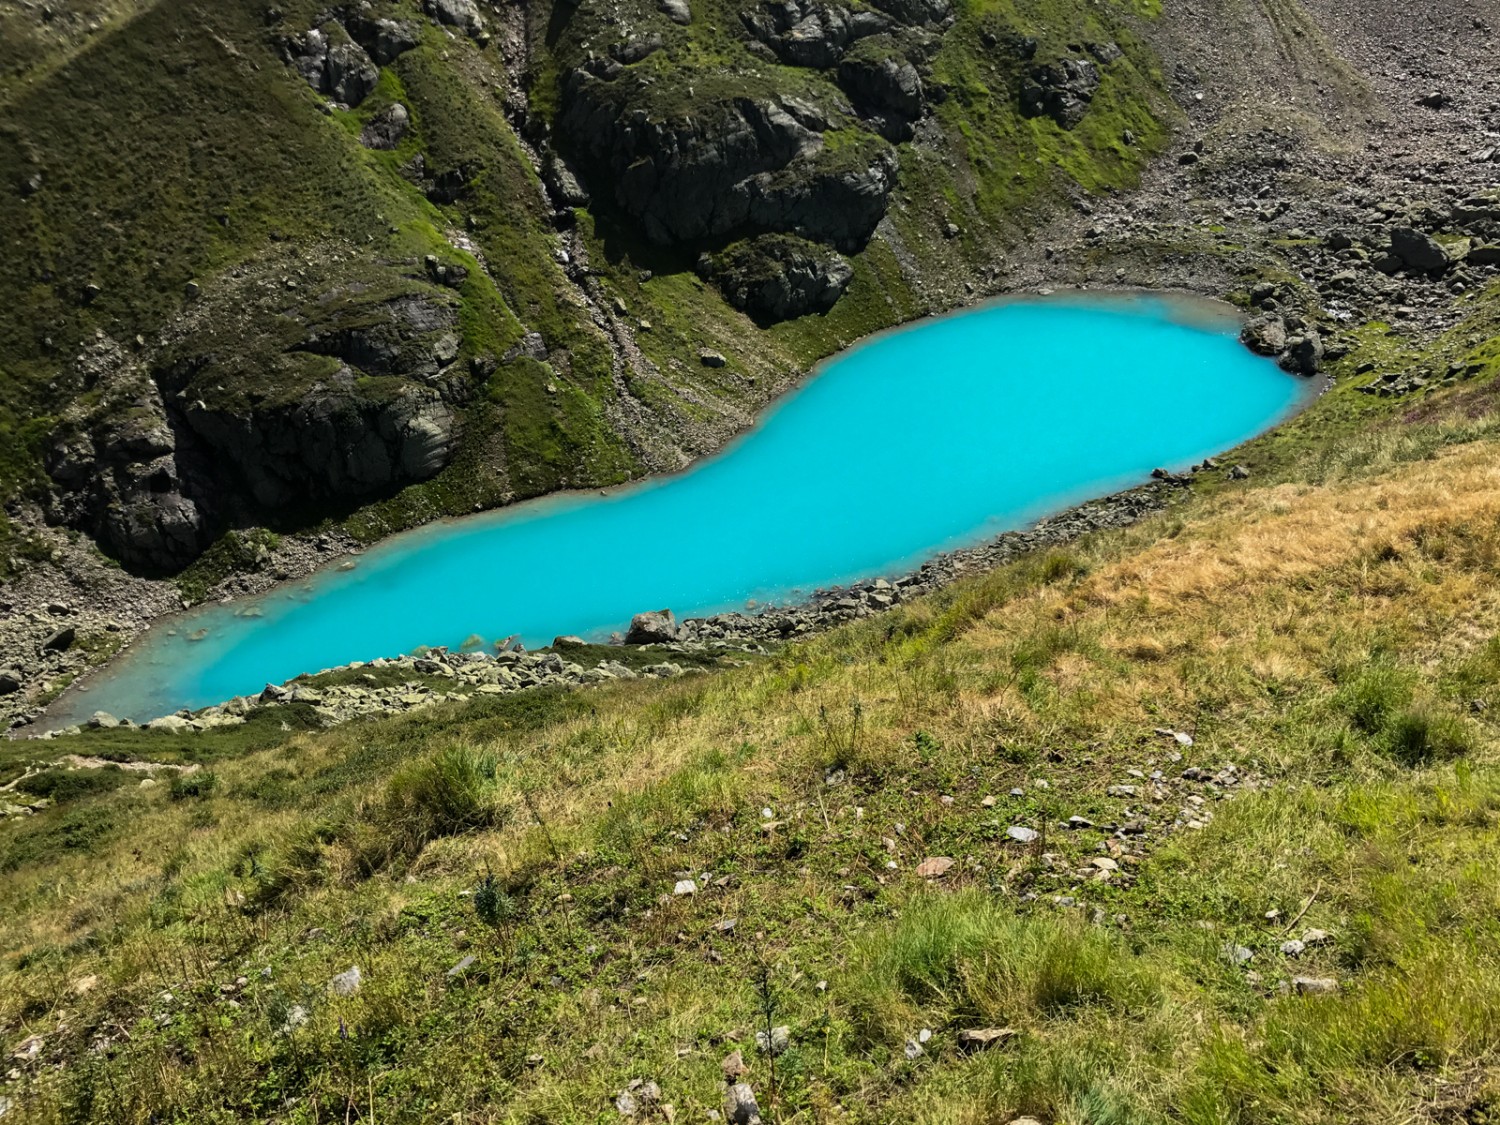 Le trésor gardé de Leitschach: le Nidersee aux eaux turquoise. Photo: Vera In-Albon